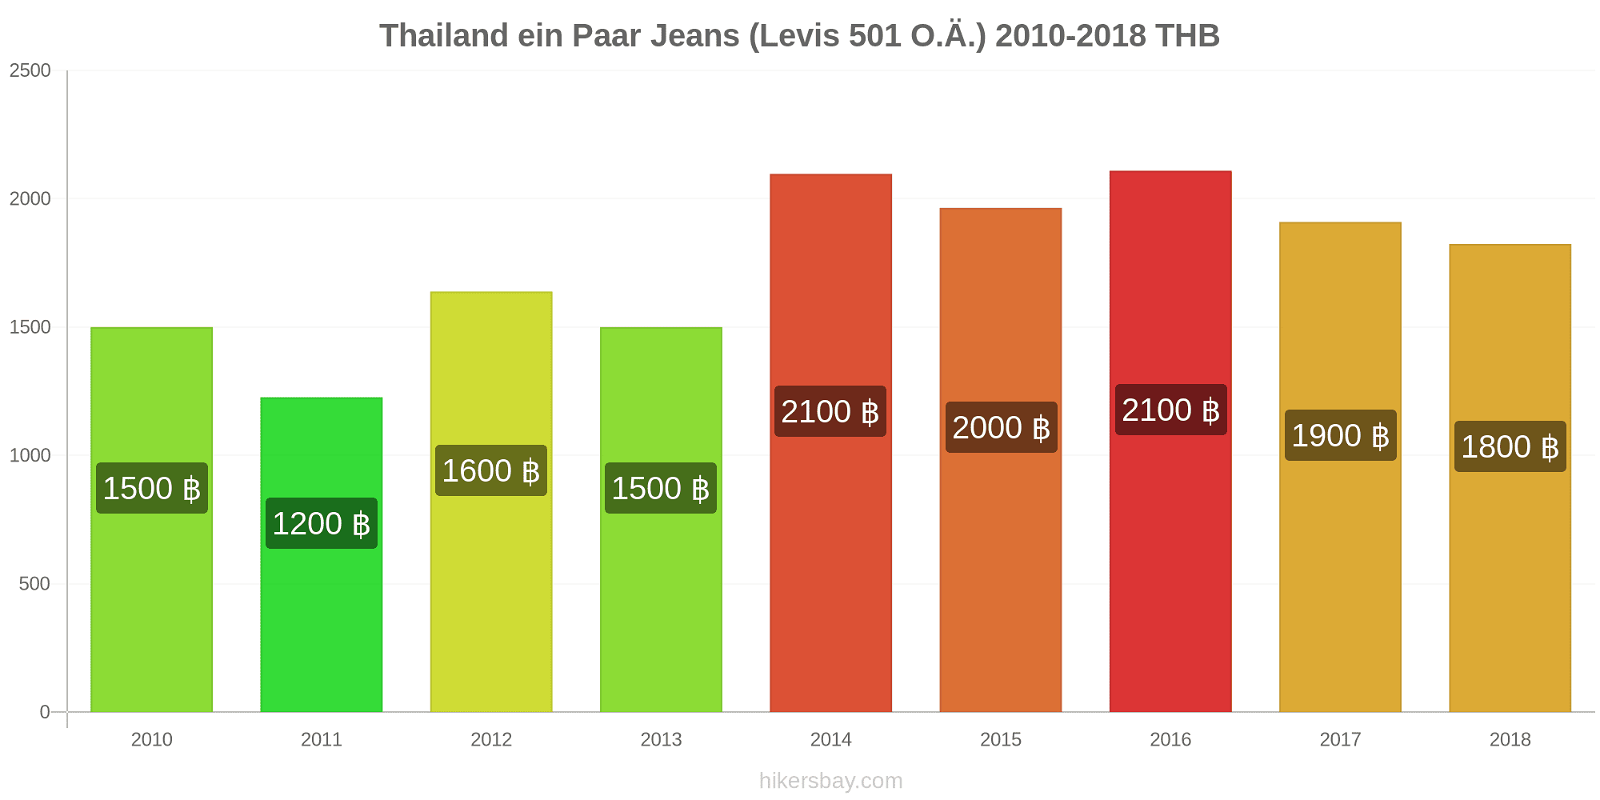 Thailand Preisänderungen 1 Paar Jeans (Levis 501 oder ähnlich) hikersbay.com